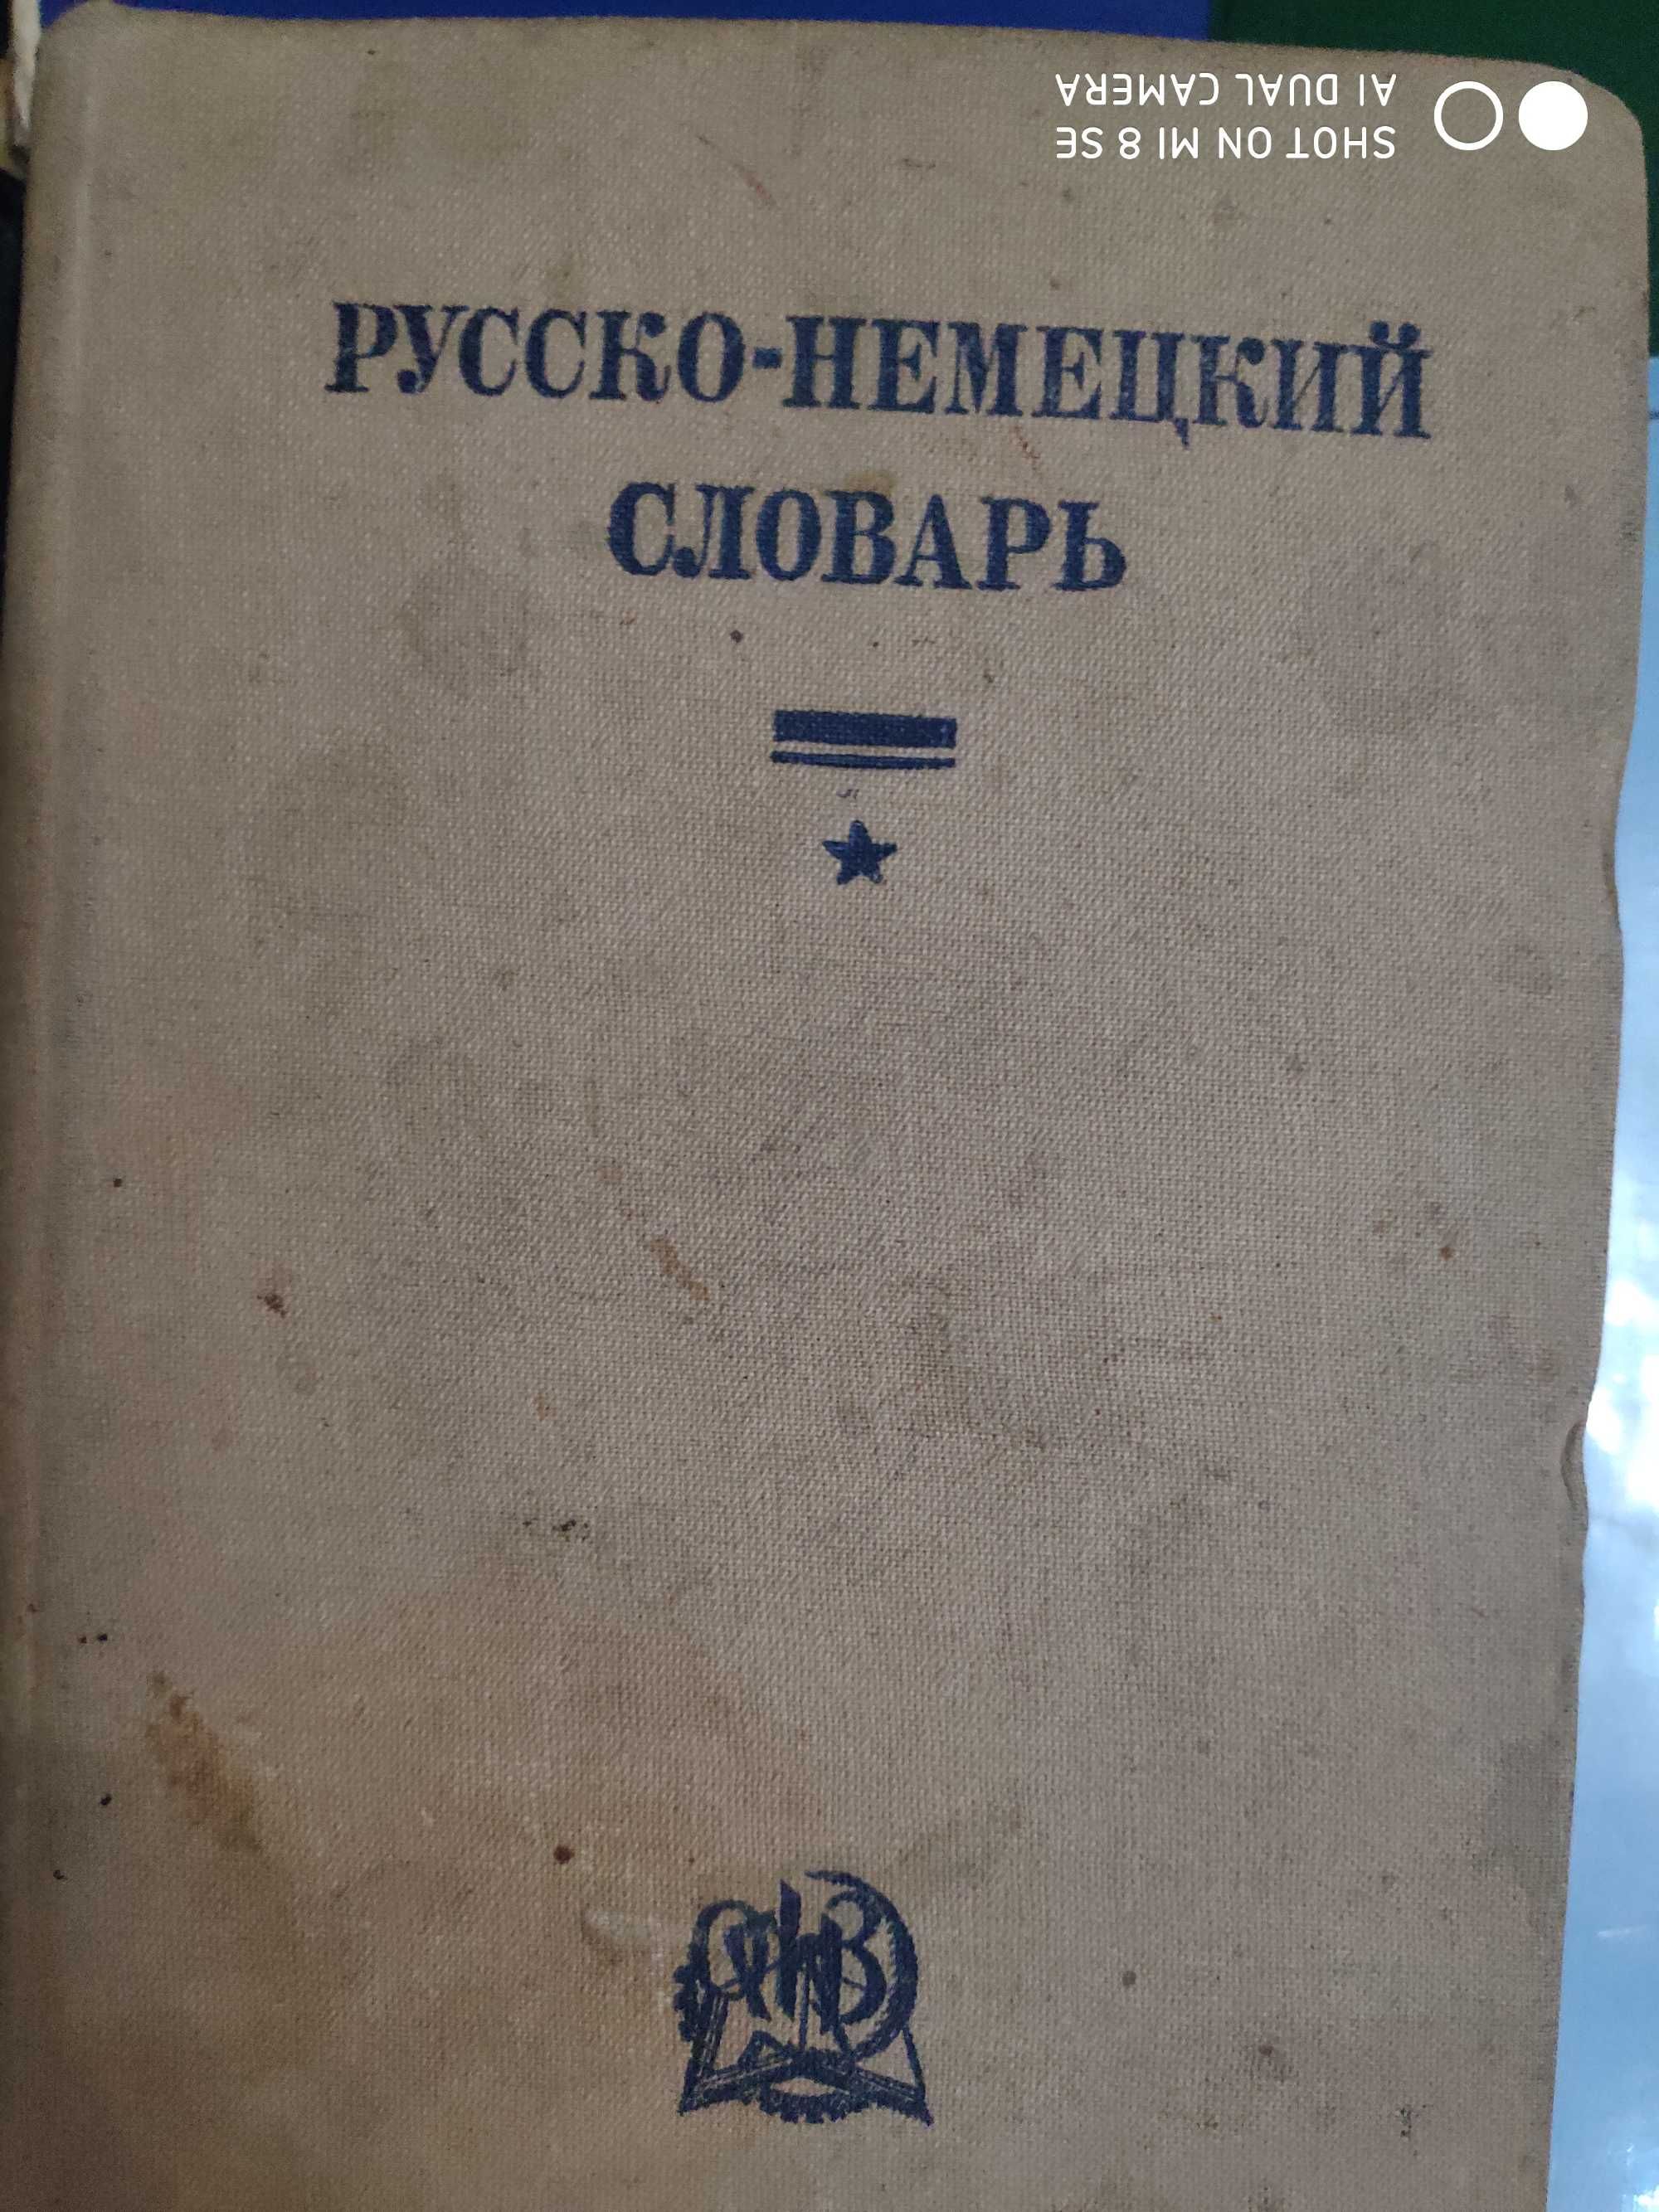 Словари Немецкого языка 1911, 1931-34г.г